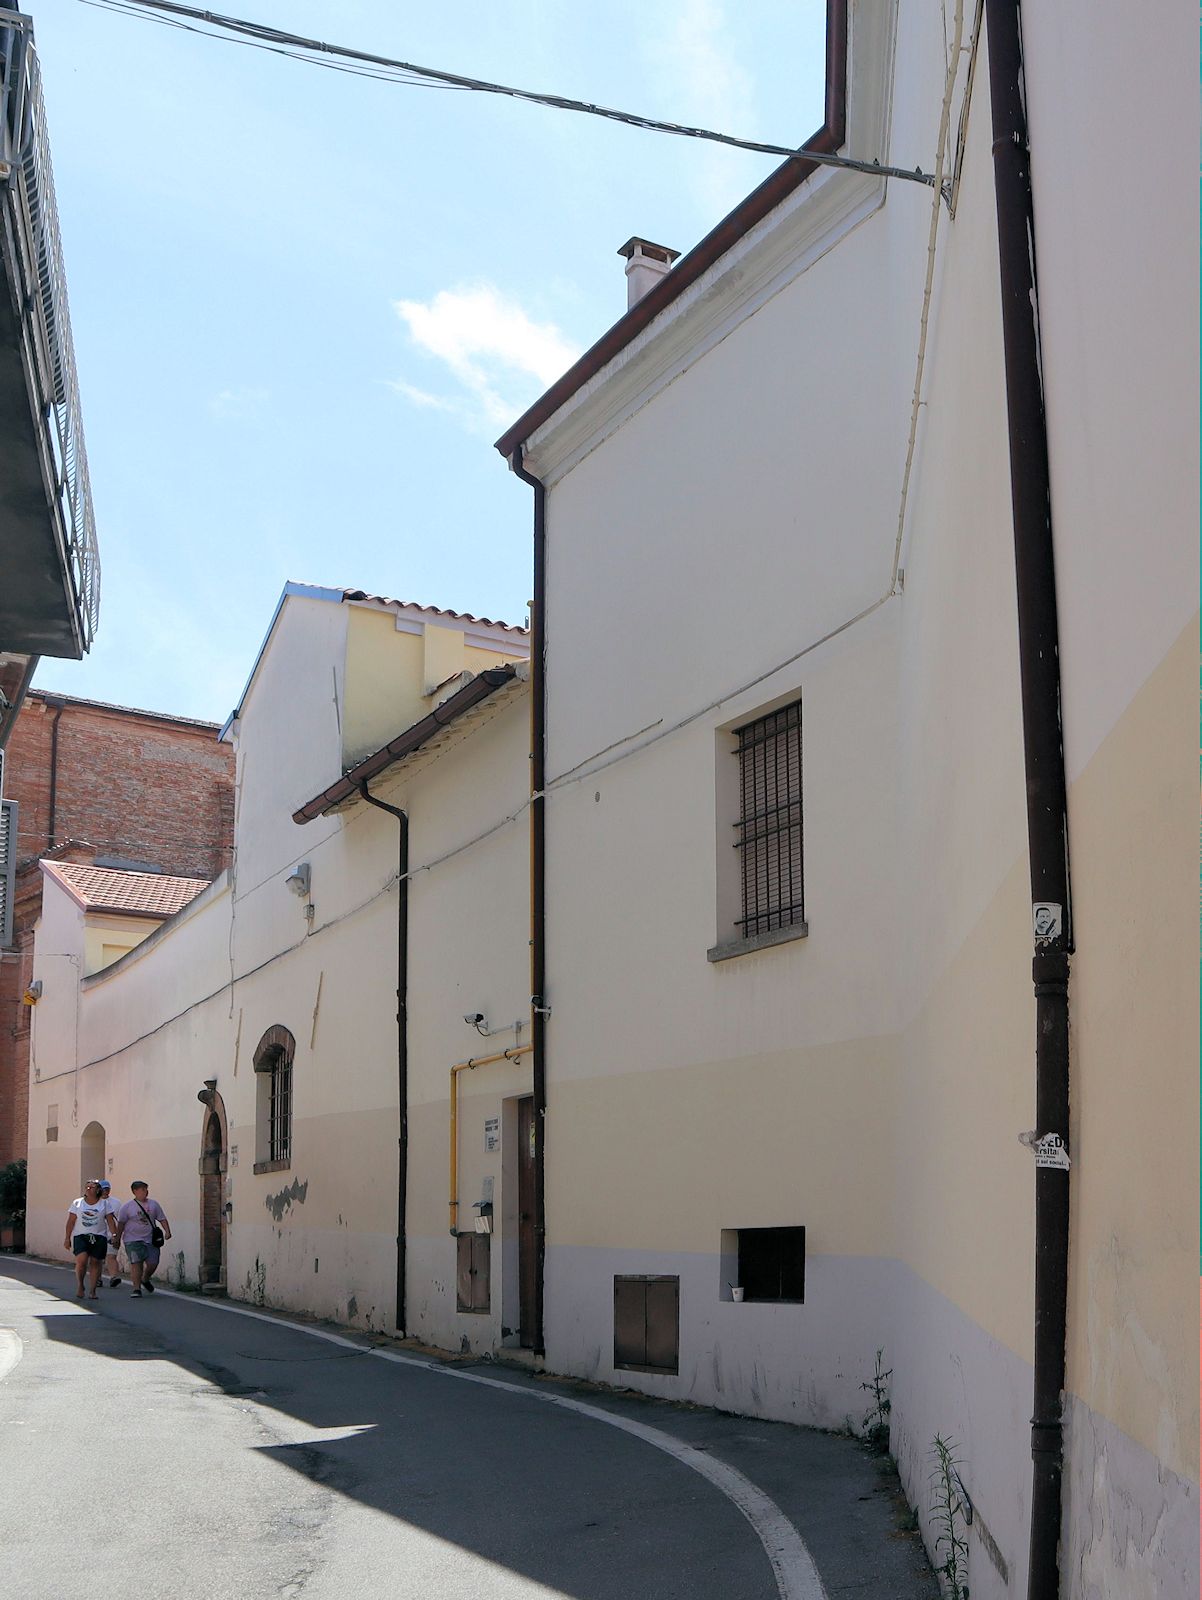 ehemaliges Kloster Nostra Signora degli Angeli in Rimini